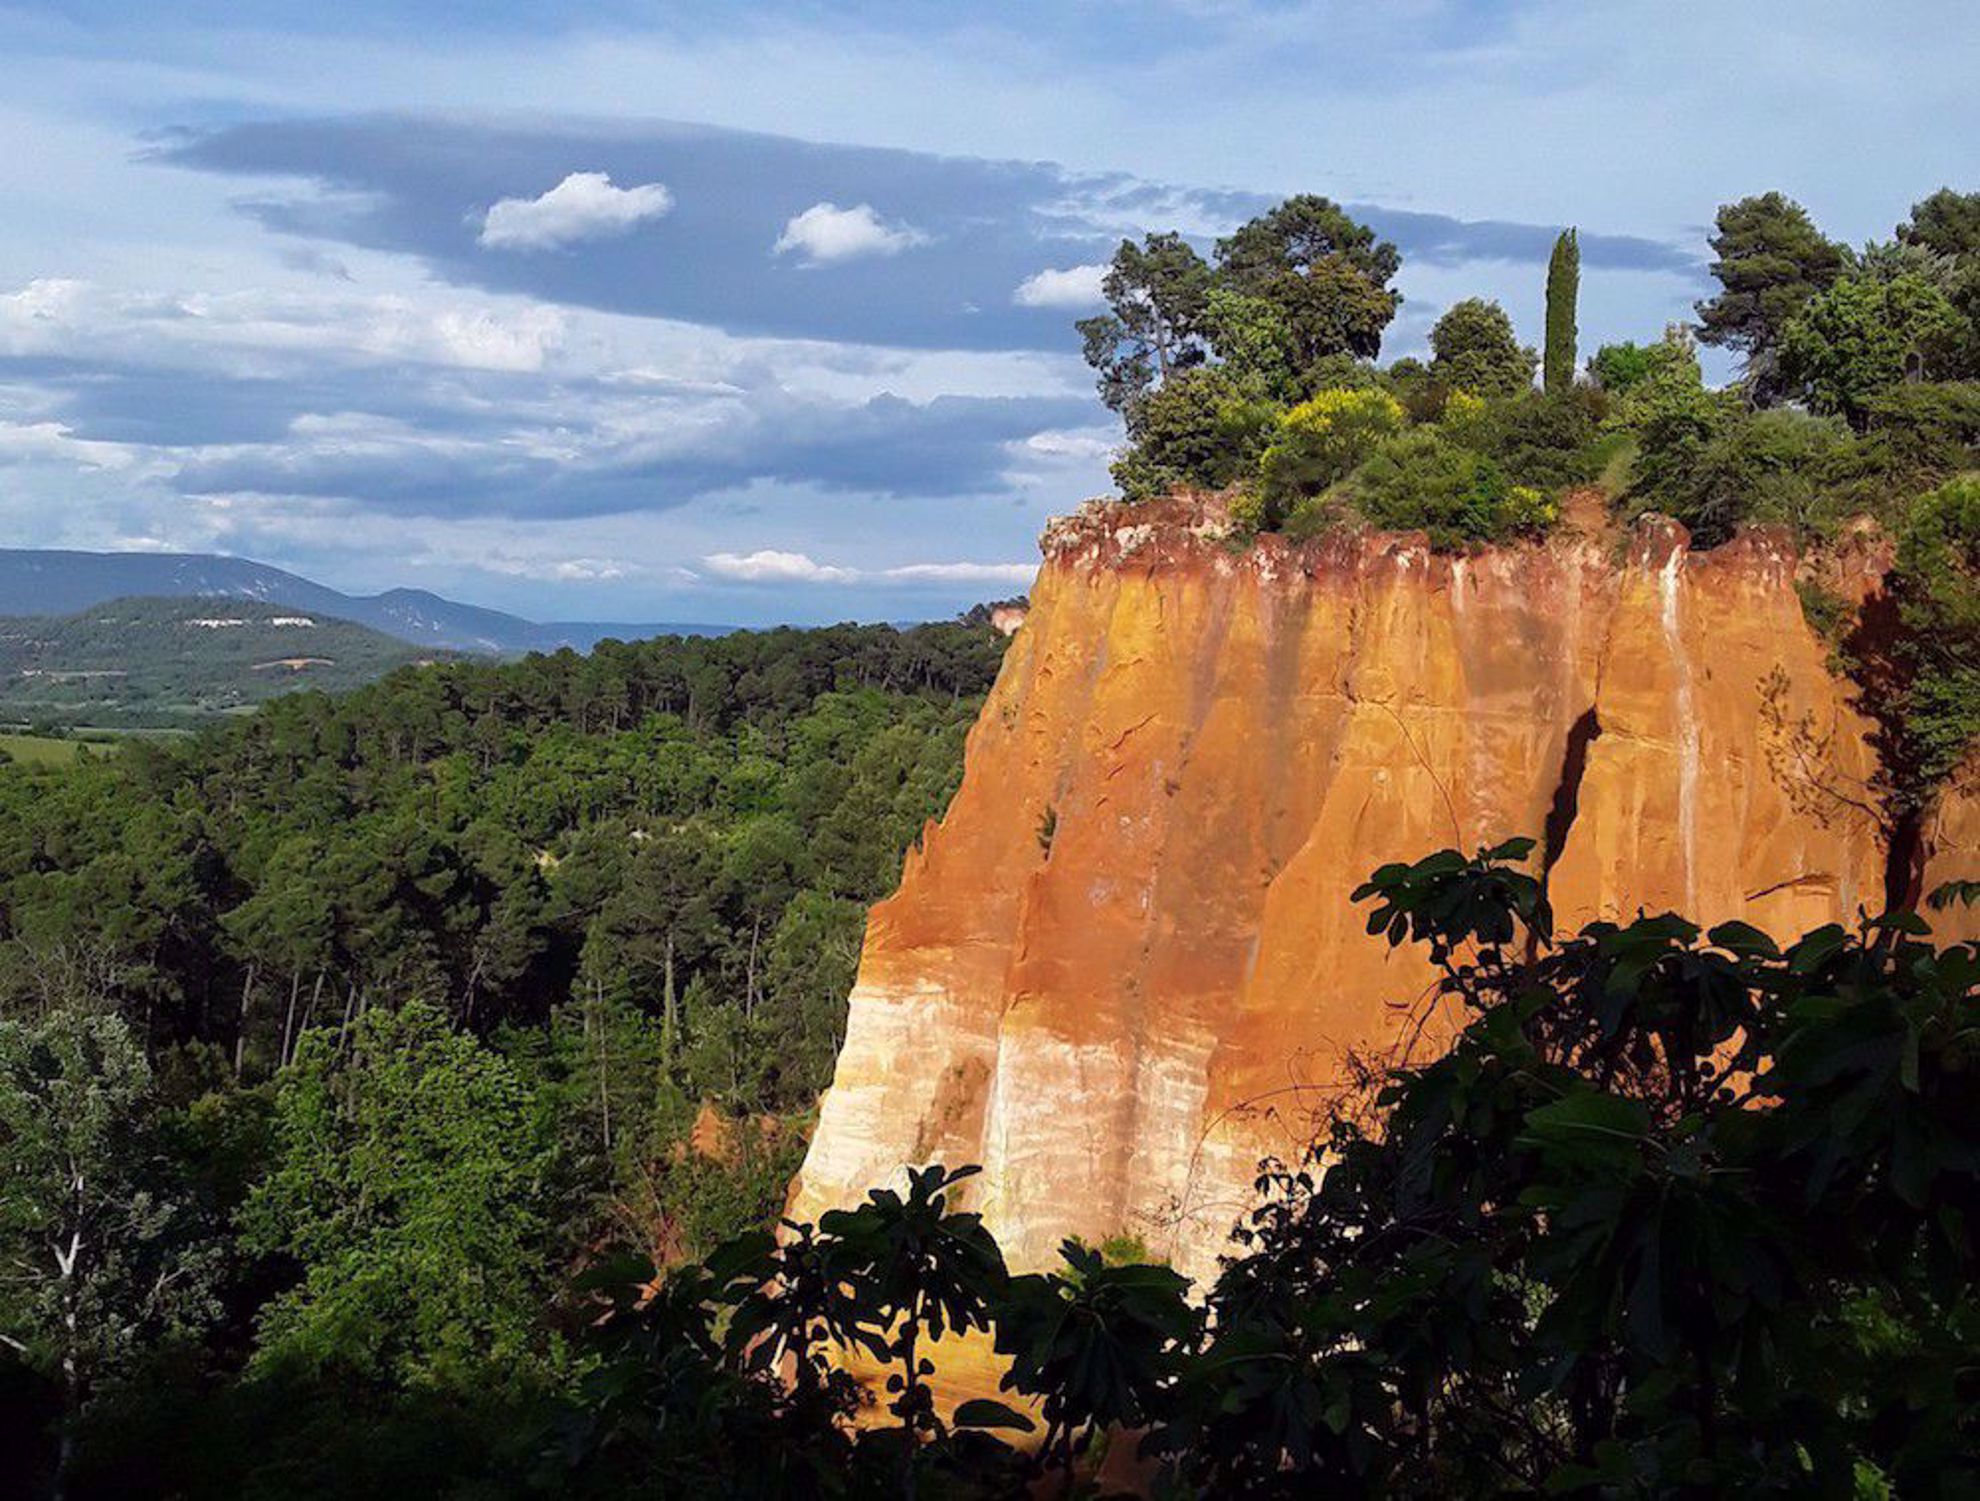 Red ochre cliffs near Roussillon France